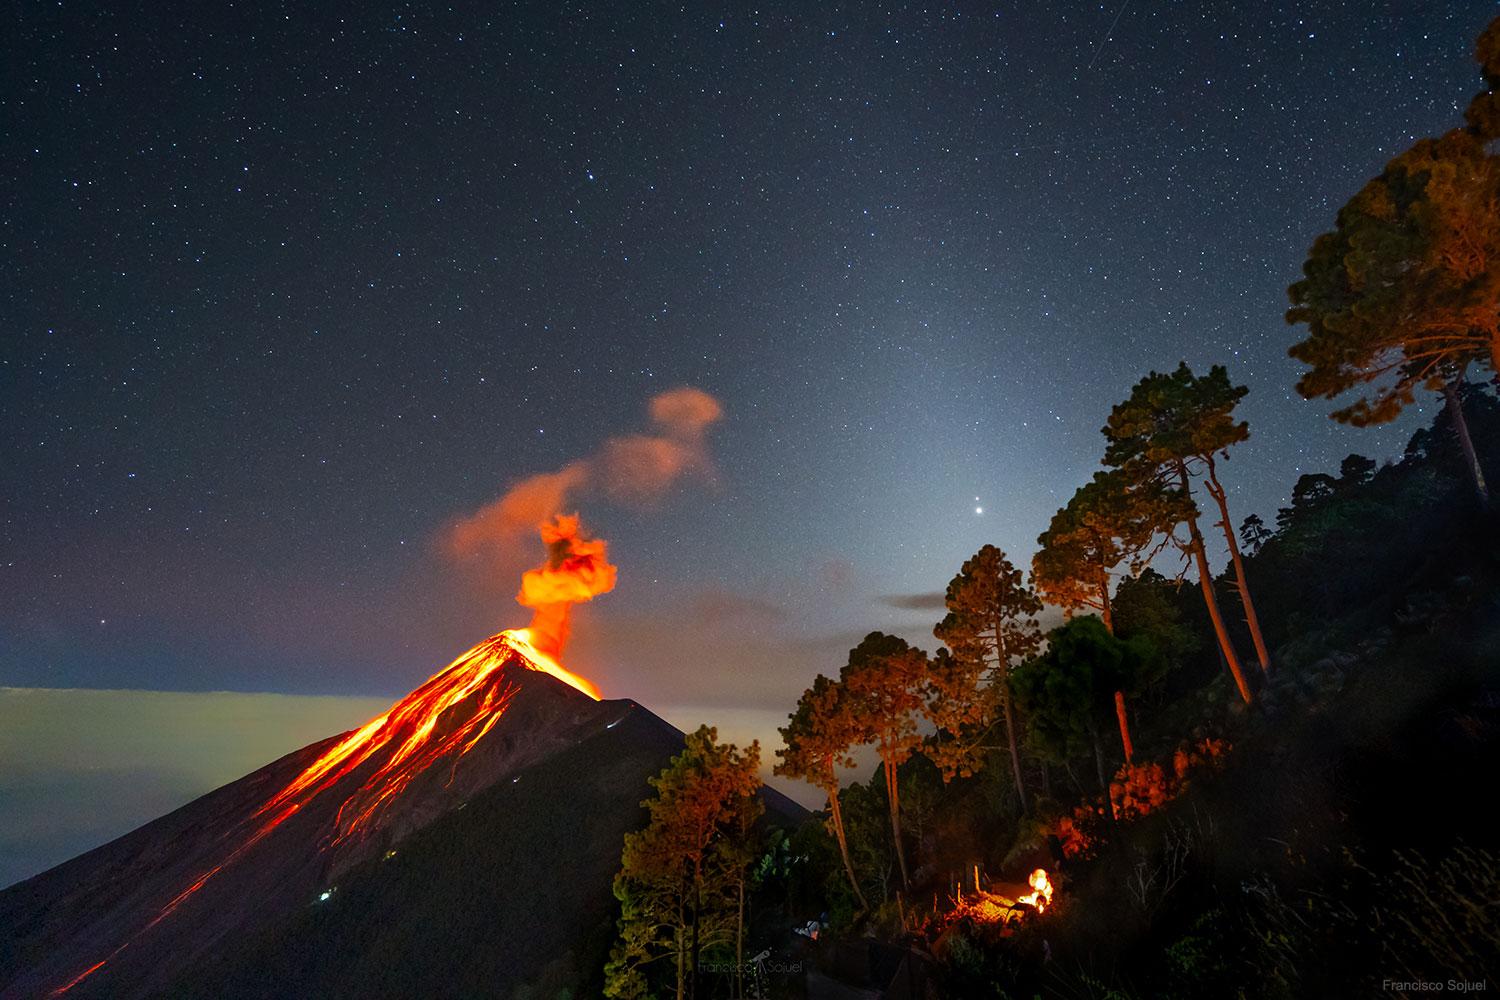 صورة من غواتيمالا تظهر كوكبي المشتري وزحل على يمينها فوق شجرة مباشرة يغمرهما الوهج المنتشر لأنوار السماوات، بينما يظهر على اليسار بركان ثائر